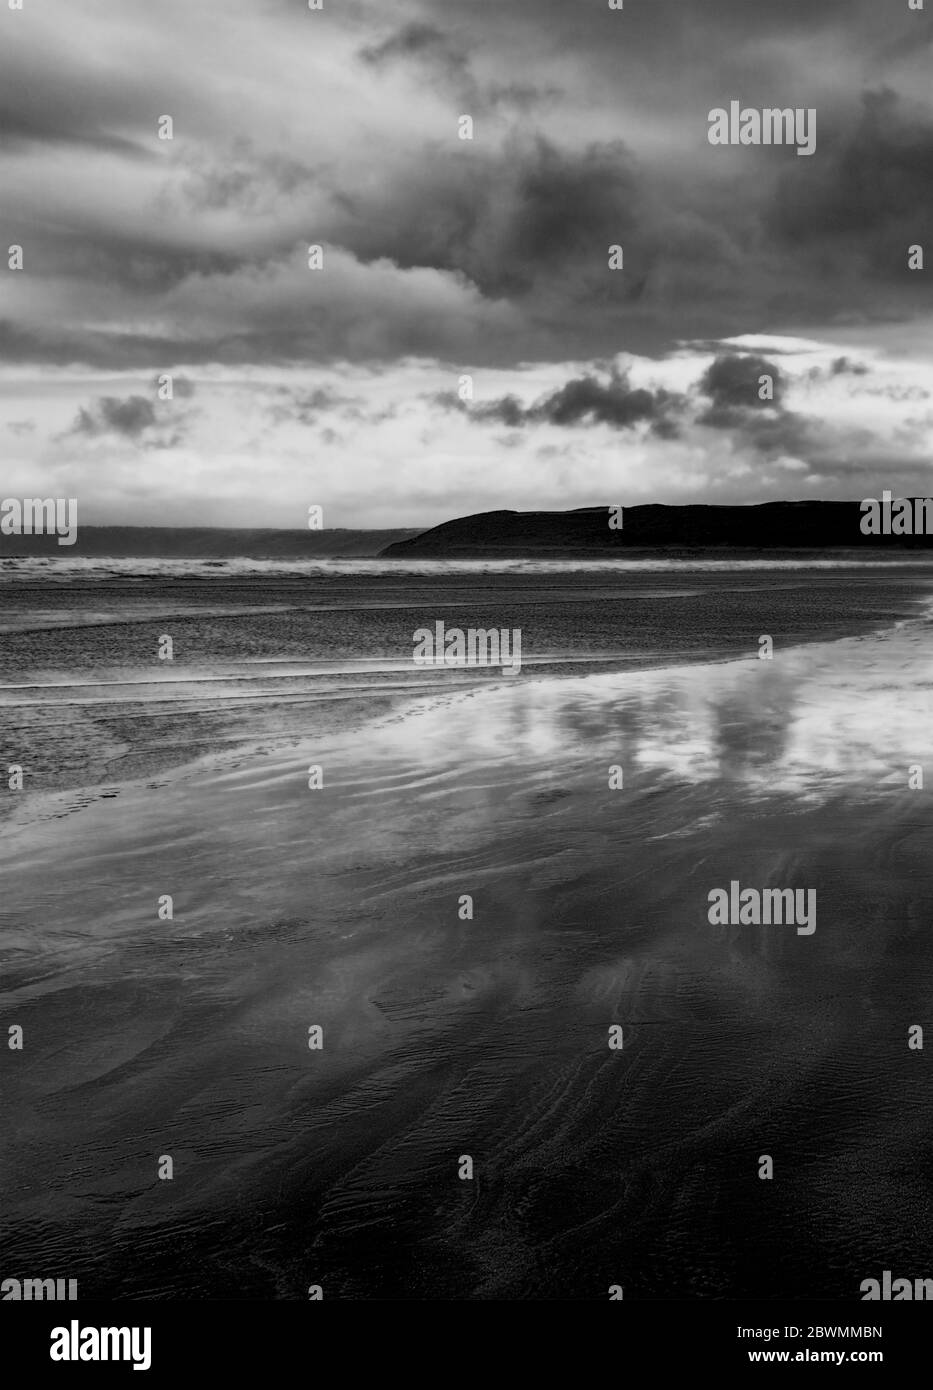 Immagine in bianco e nero di una spiaggia sabbiosa illuminata dalla luna di notte, nuvole sopra un promontorio lontano, adatto per una copertina del libro Foto Stock